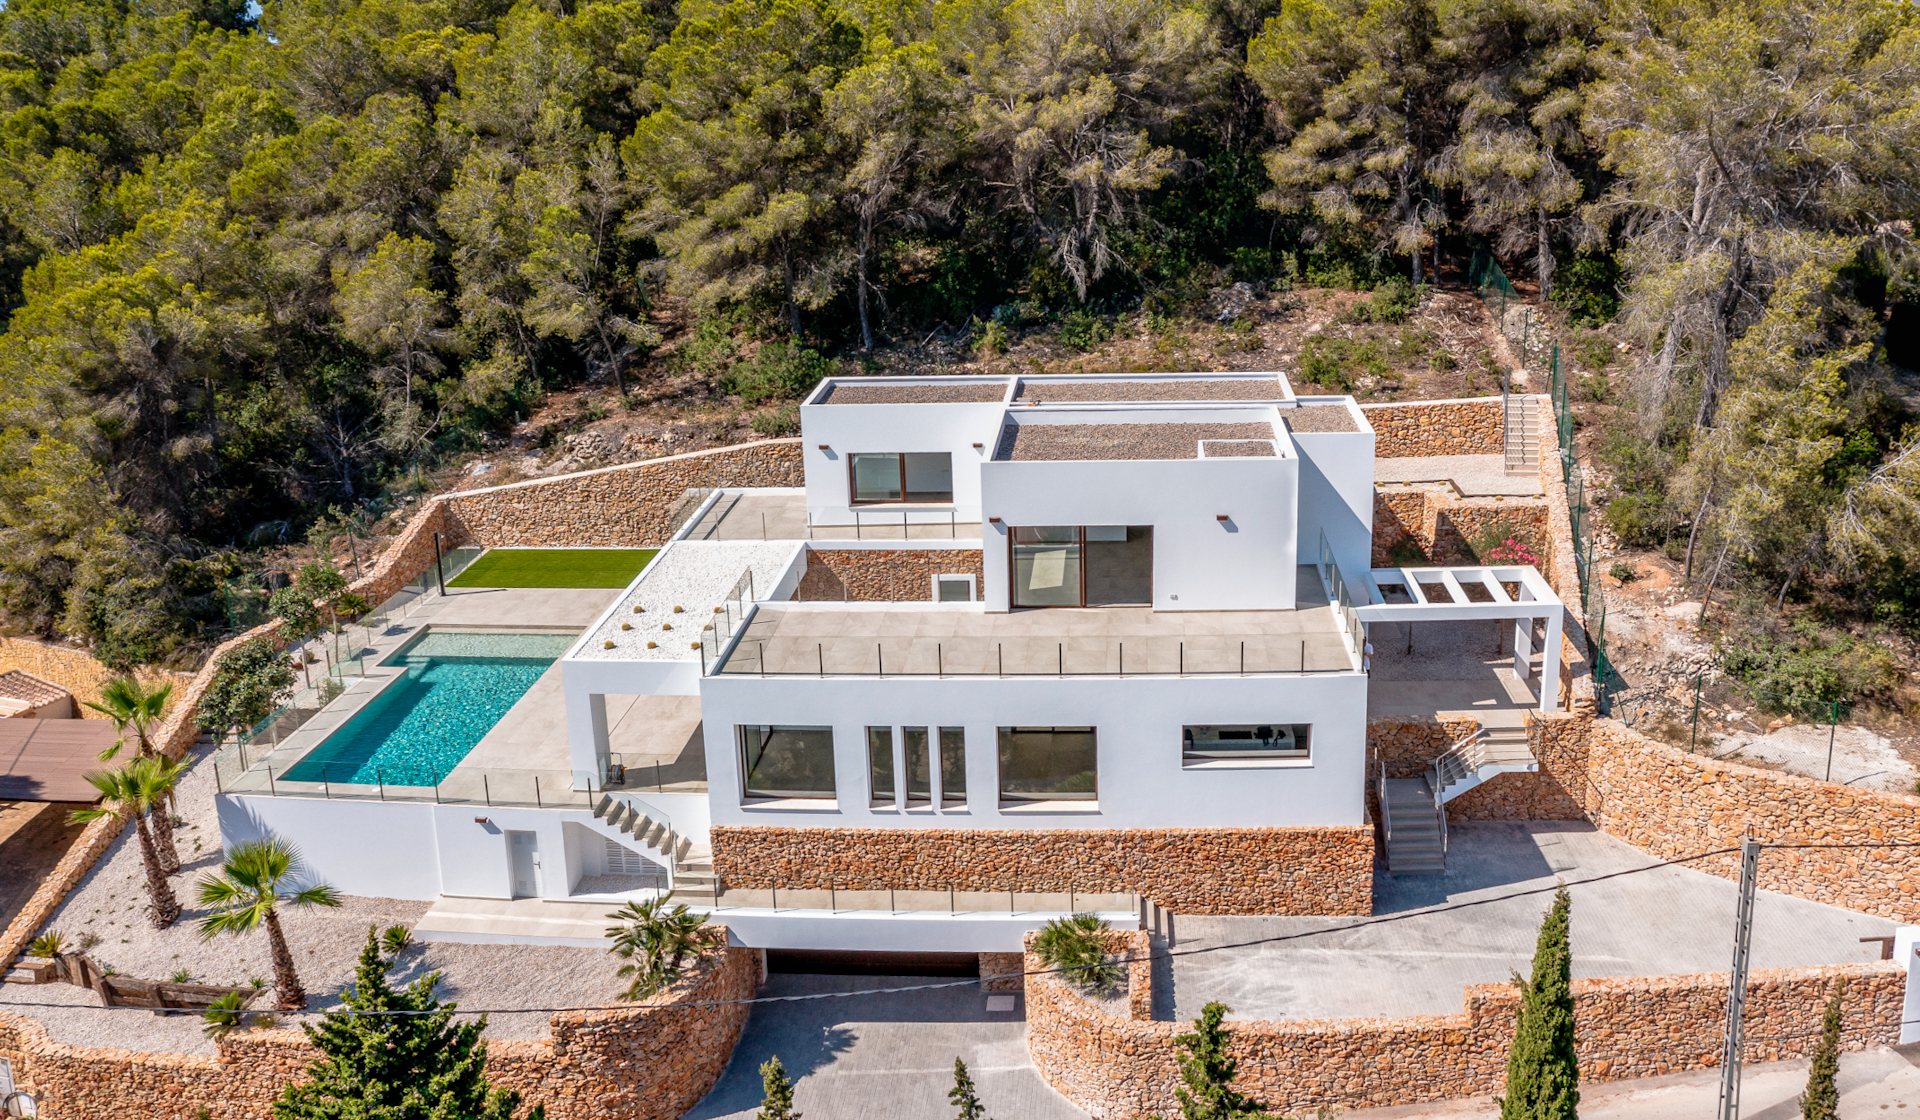 Geweldige moderne Ibiza-stijl villa klaar om in te trekken. El Portet